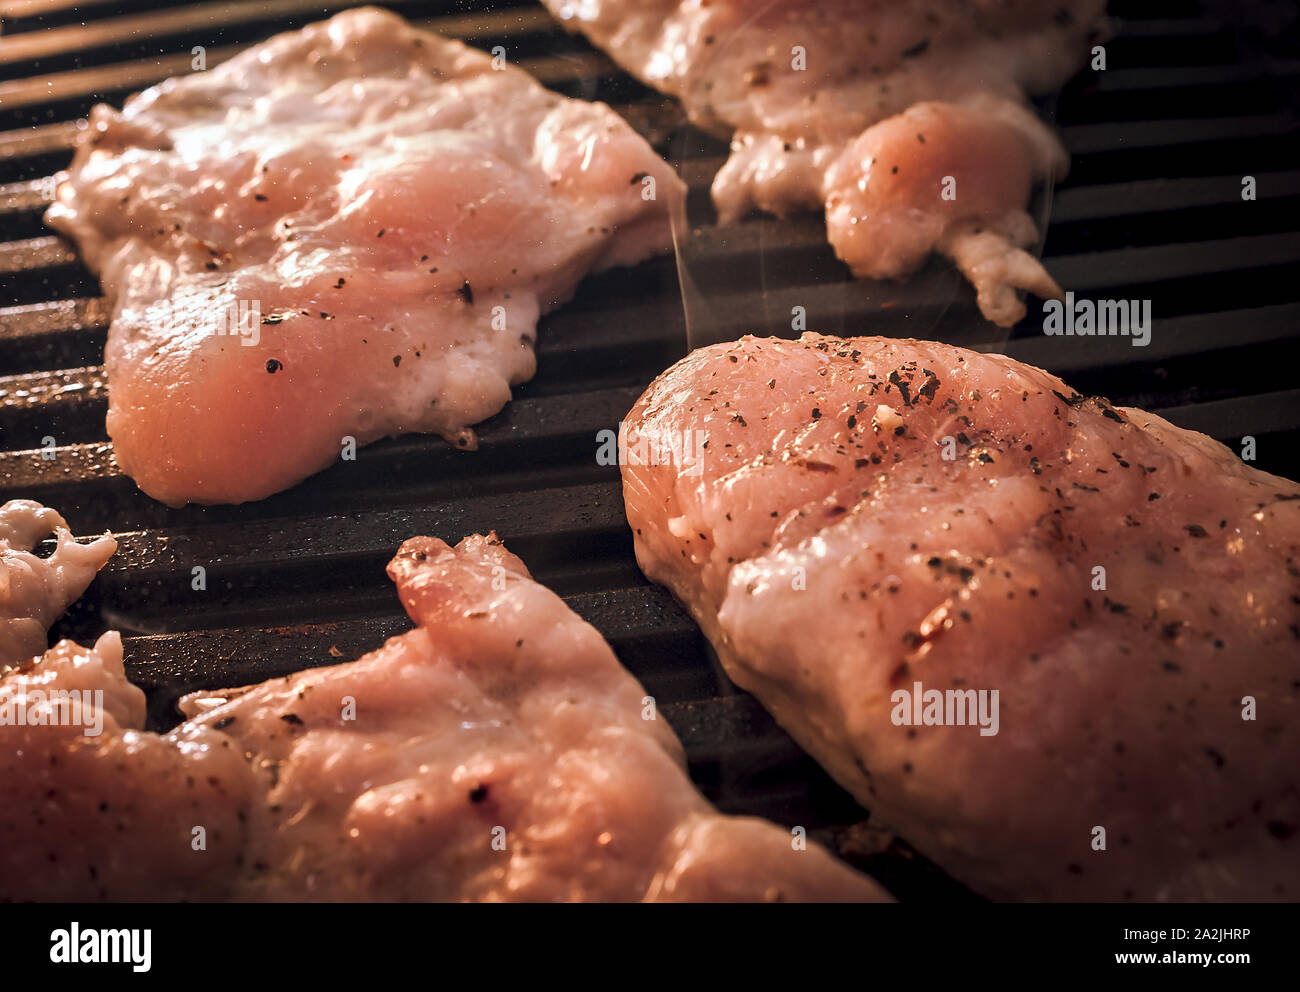 Fumante asar pollo o pavo crudo filetes de carne condimentada con especias en parrilla eléctrica placa. Foto de stock